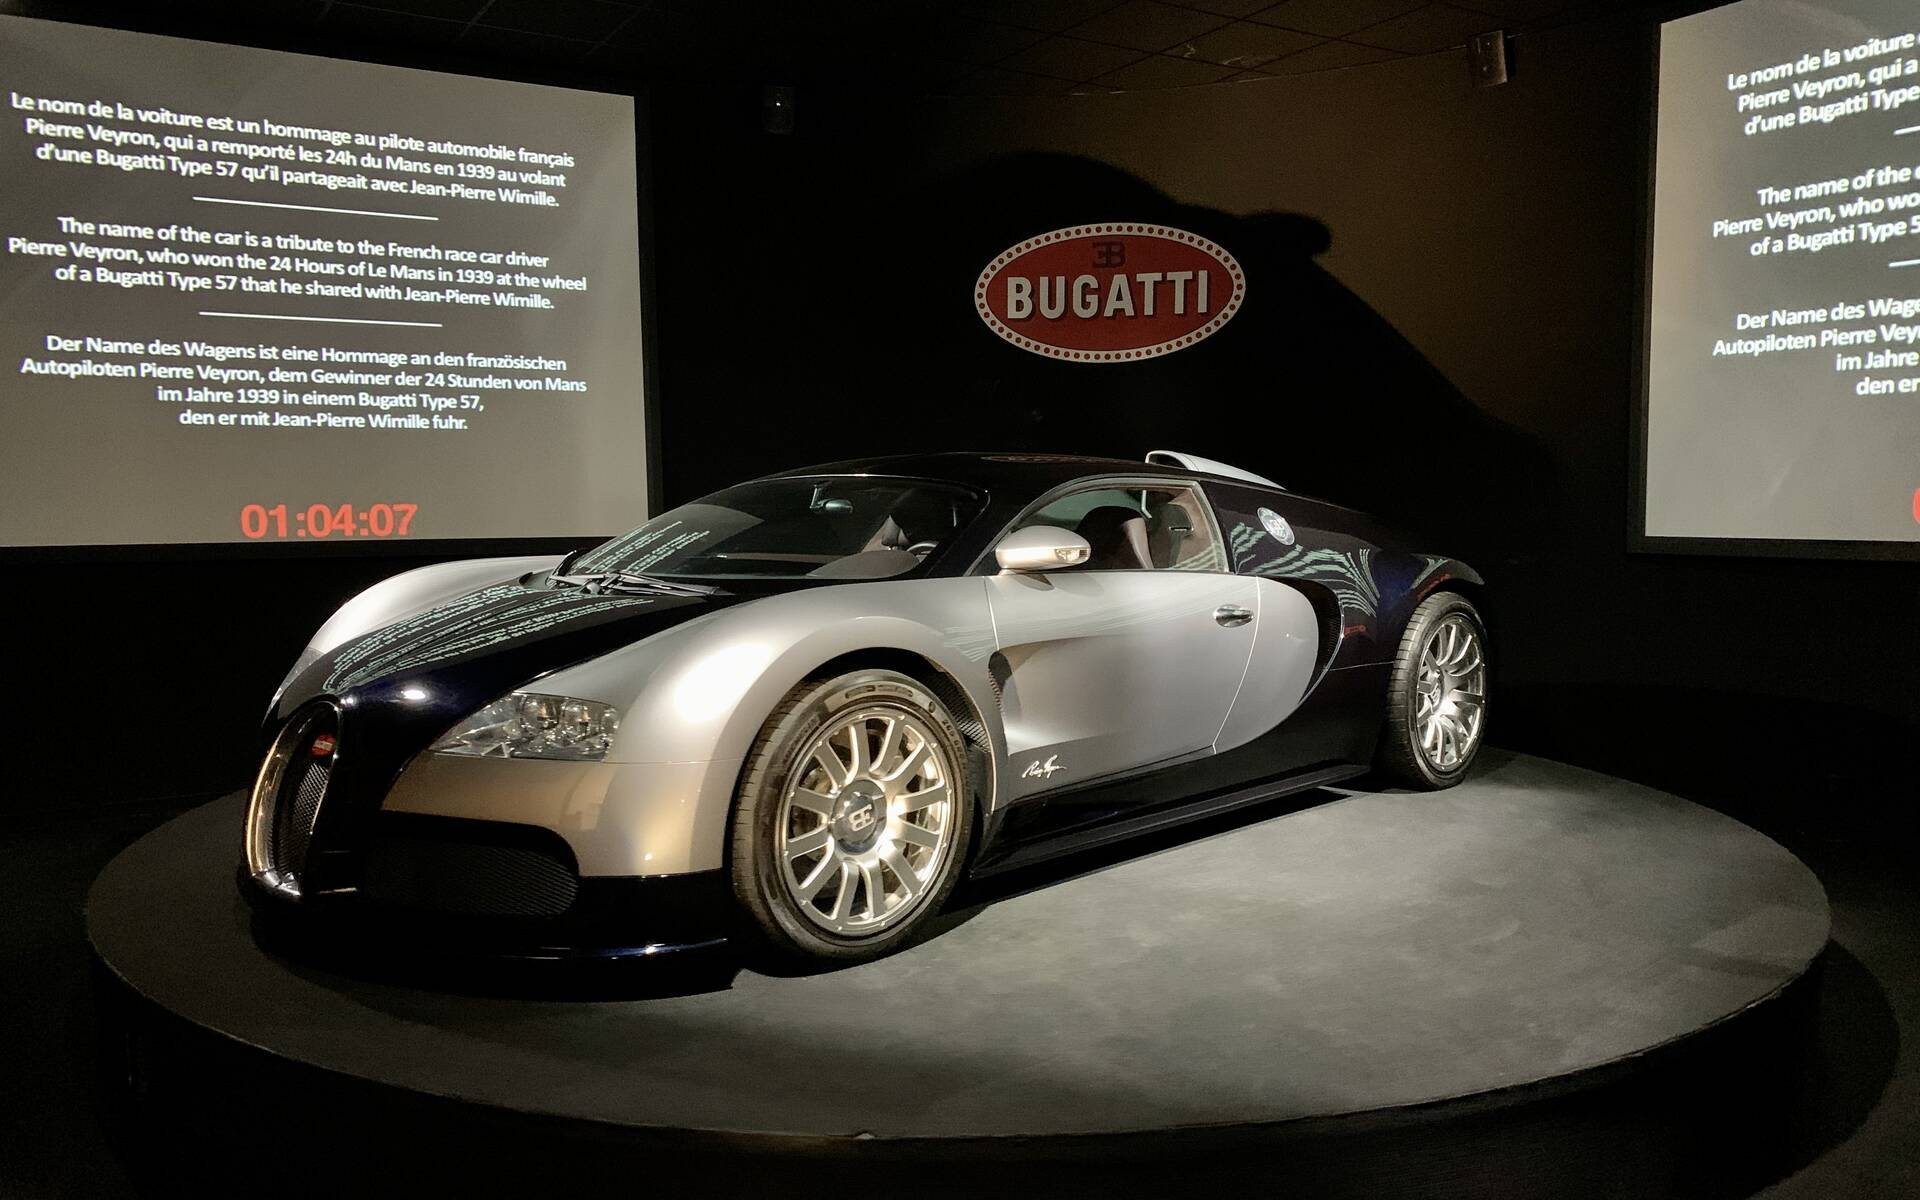 En photos : une centaine de Bugatti réunies dans un même musée 503075-en-photos-des-dizaines-de-bugatti-reunies-dans-un-meme-musee